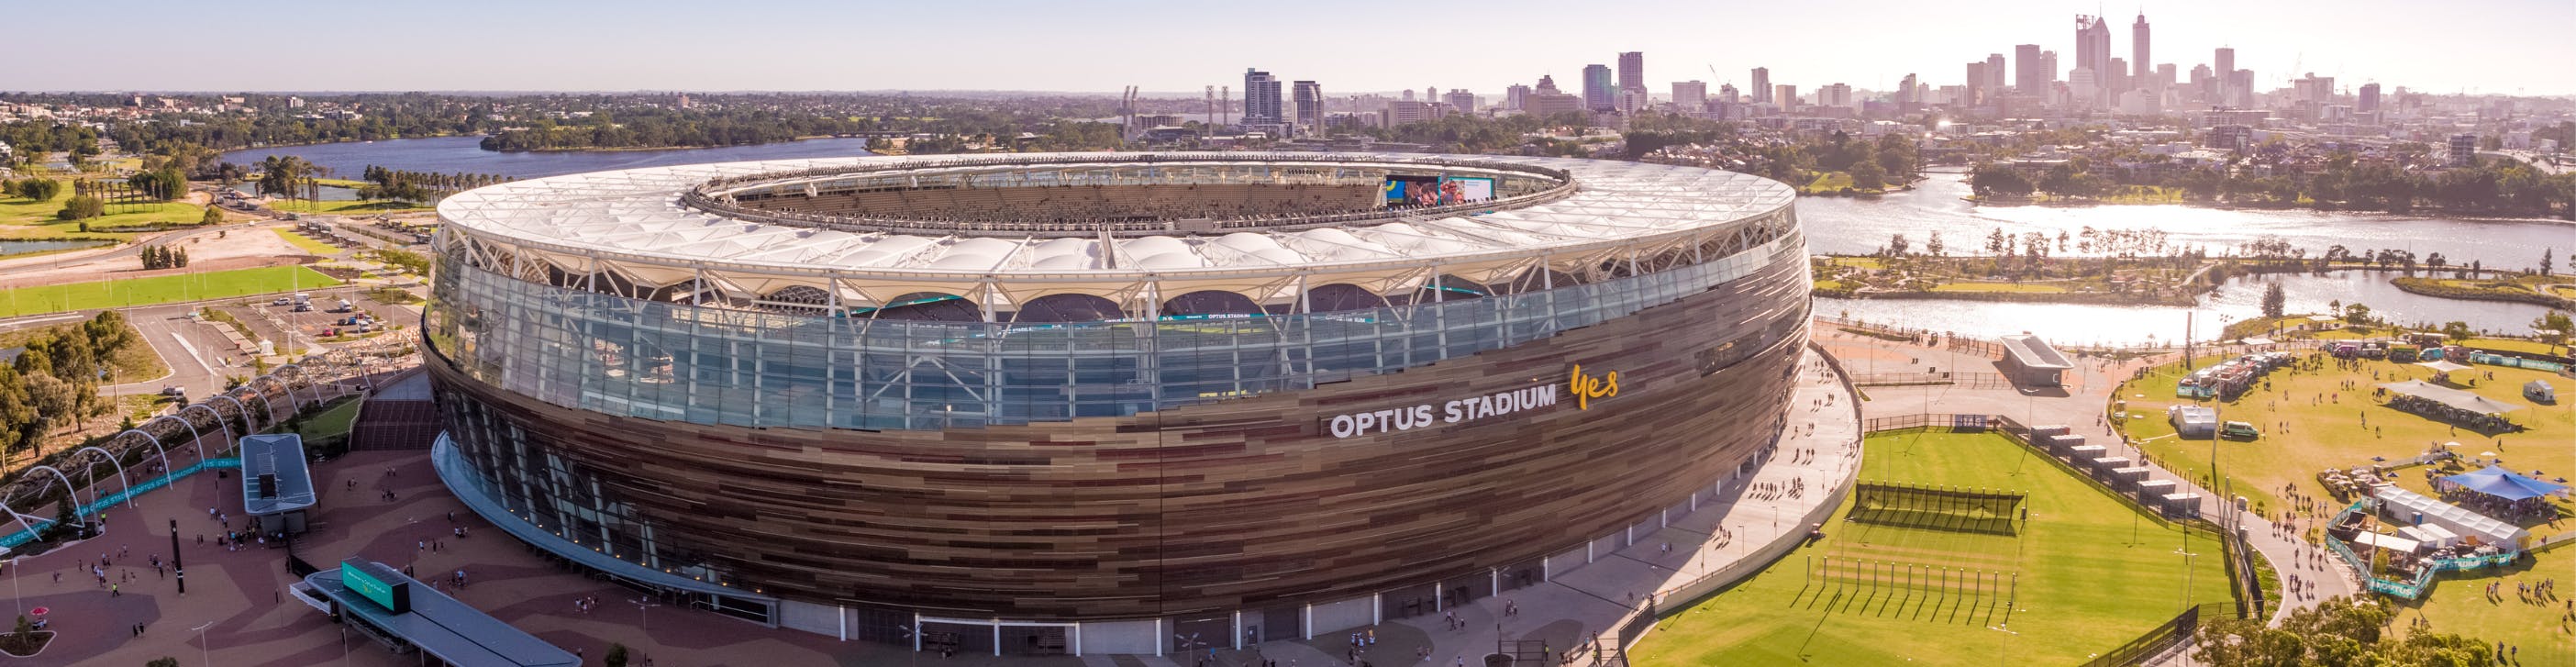 Optus Stadium, Perth WA